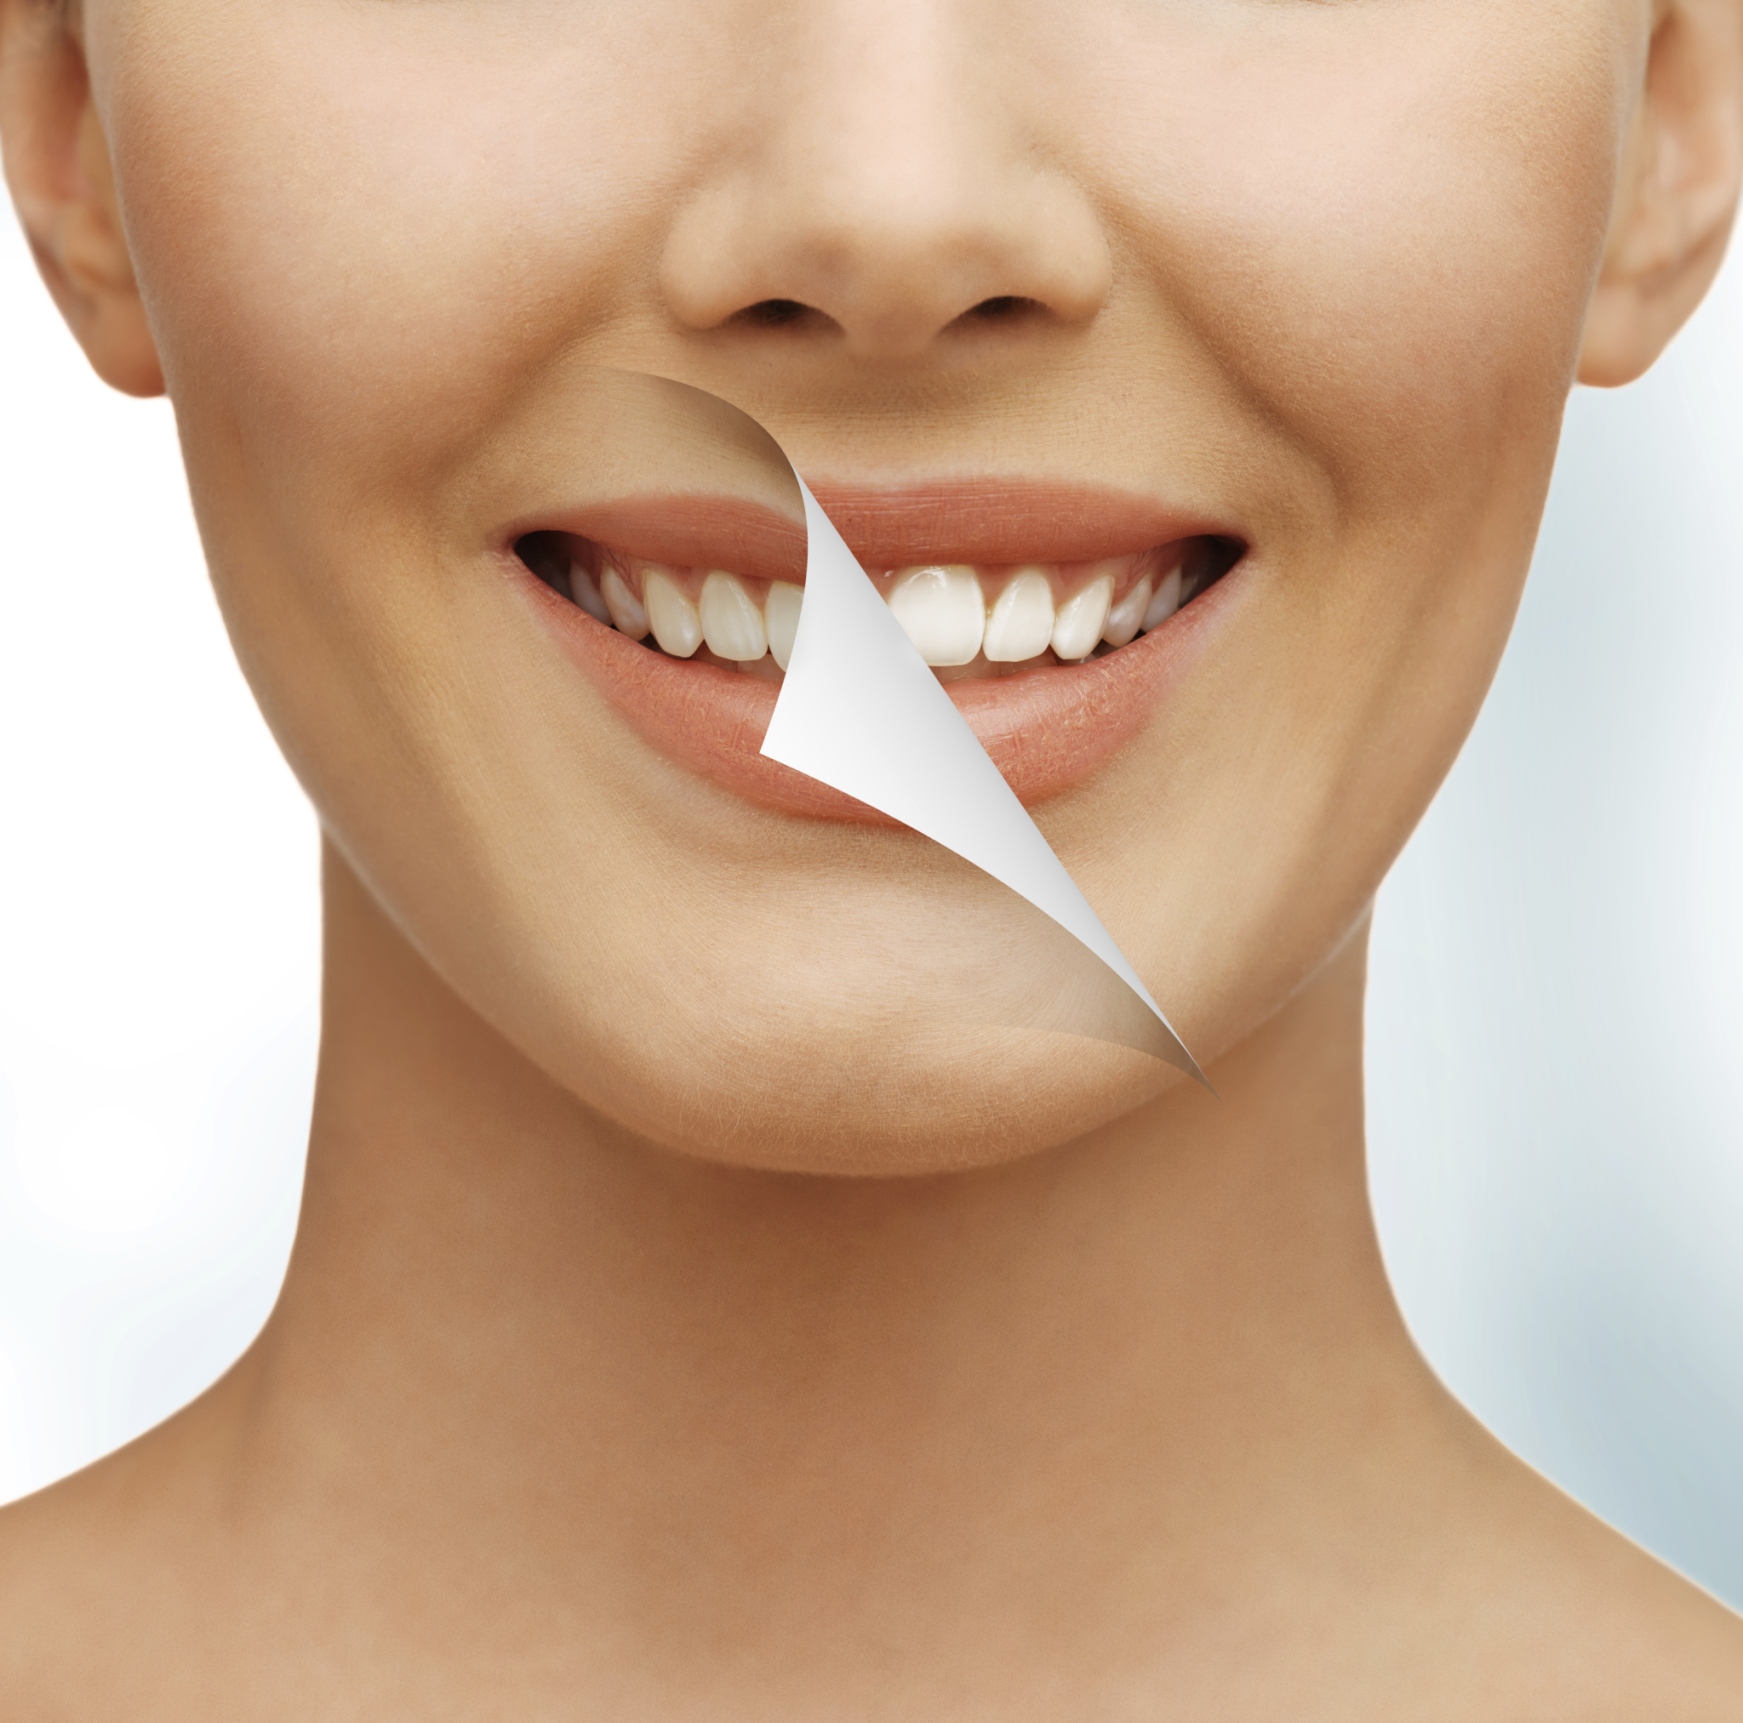 Rimedi naturali efficaci per denti bianchi